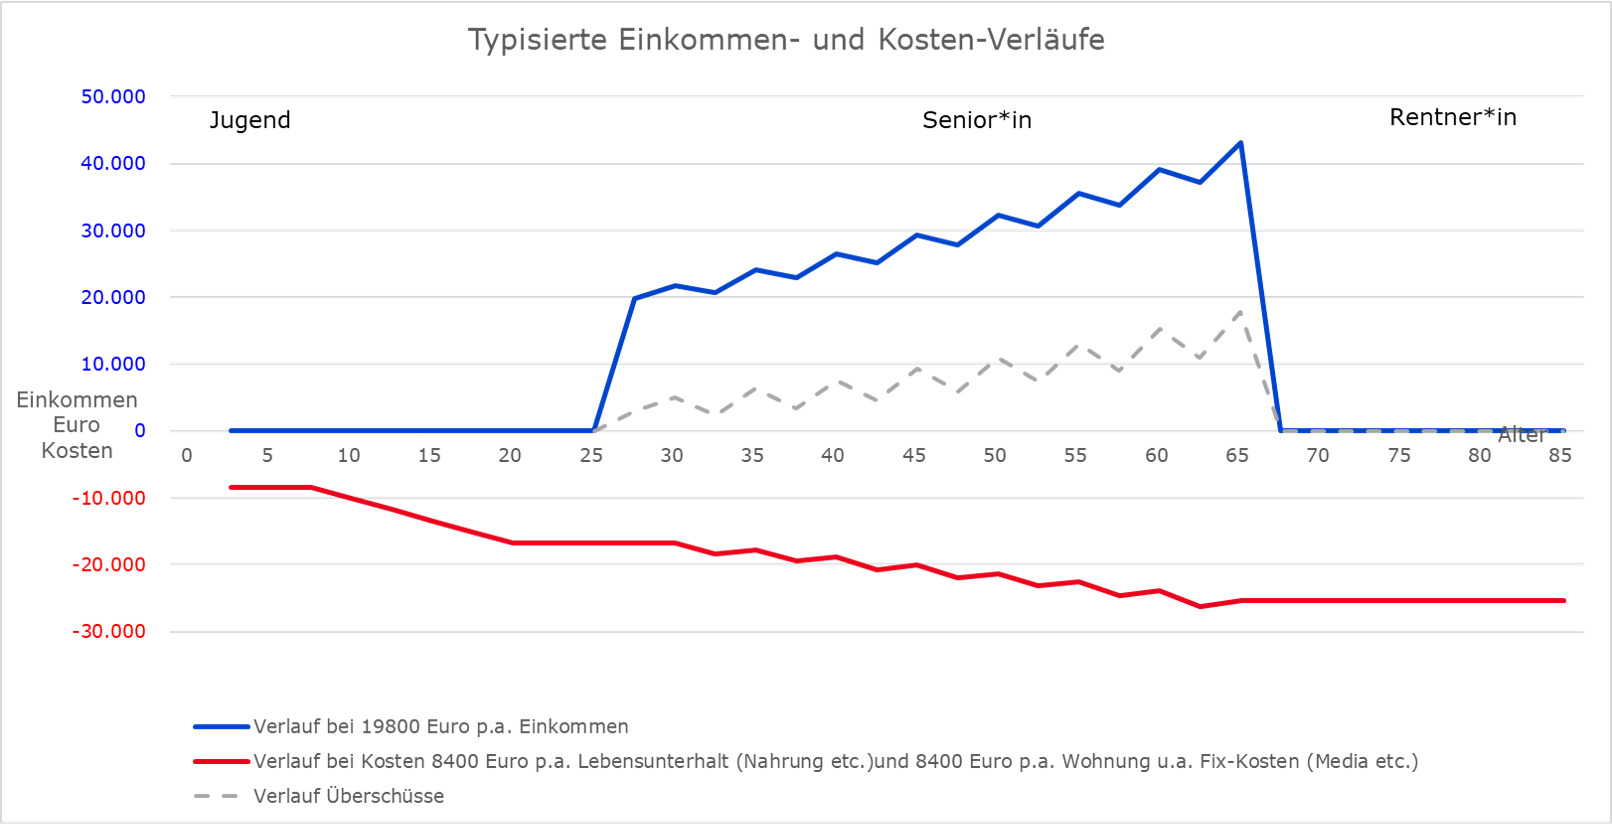 Abbildung: Verläufe von Einkommen (blaue Linien) und Überschüssen (graue Linie) im Zeitablauf bei schwankendem Einkommen (Illustration) <br>